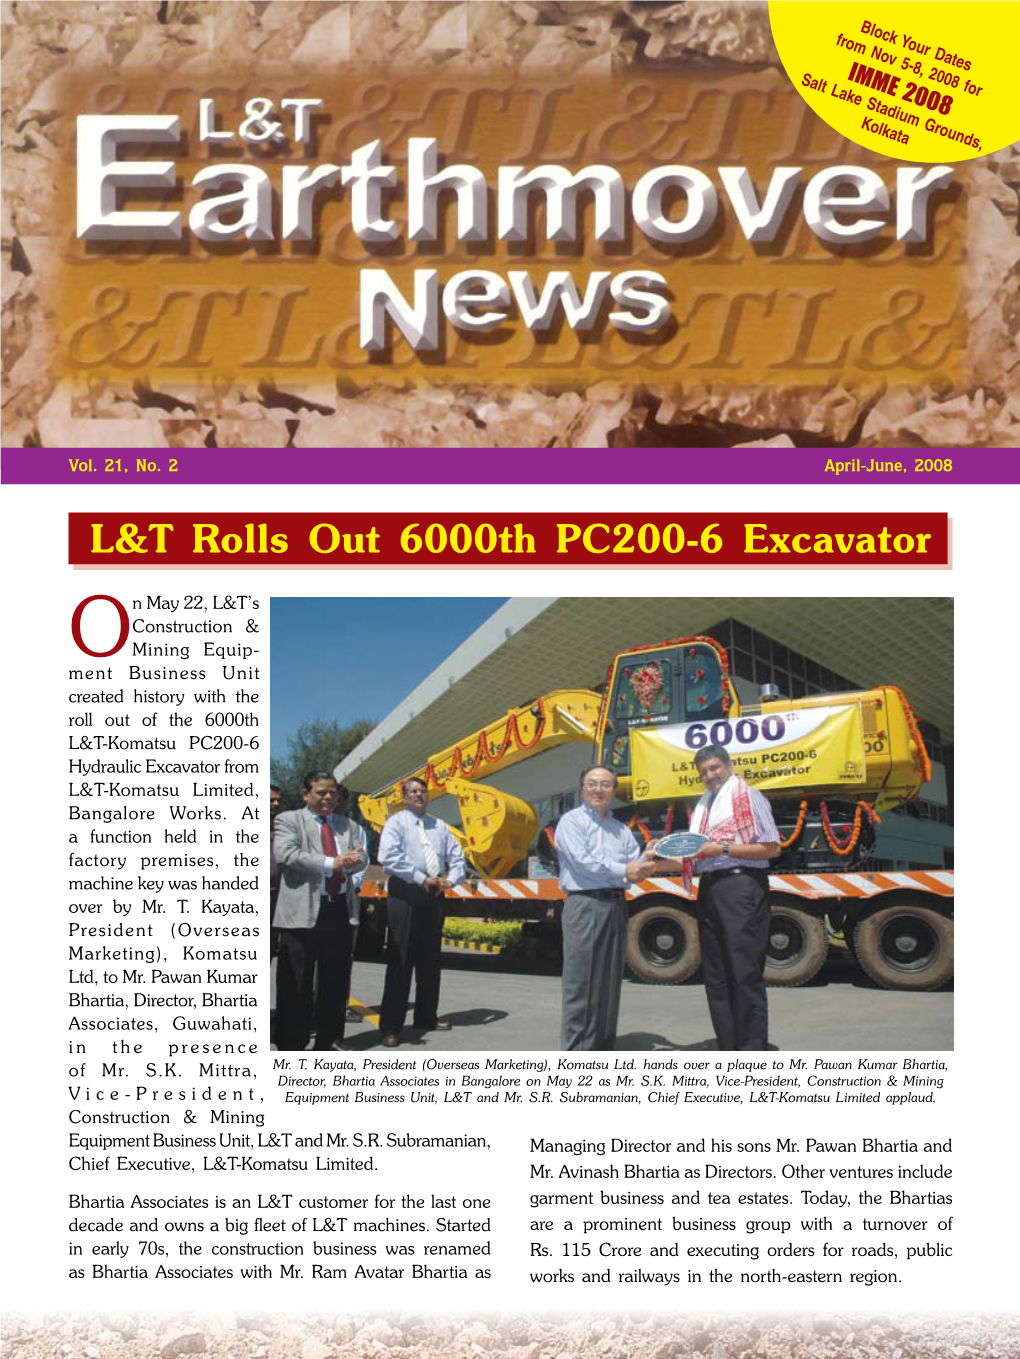 L&T Earthmover News – April-June, 2008